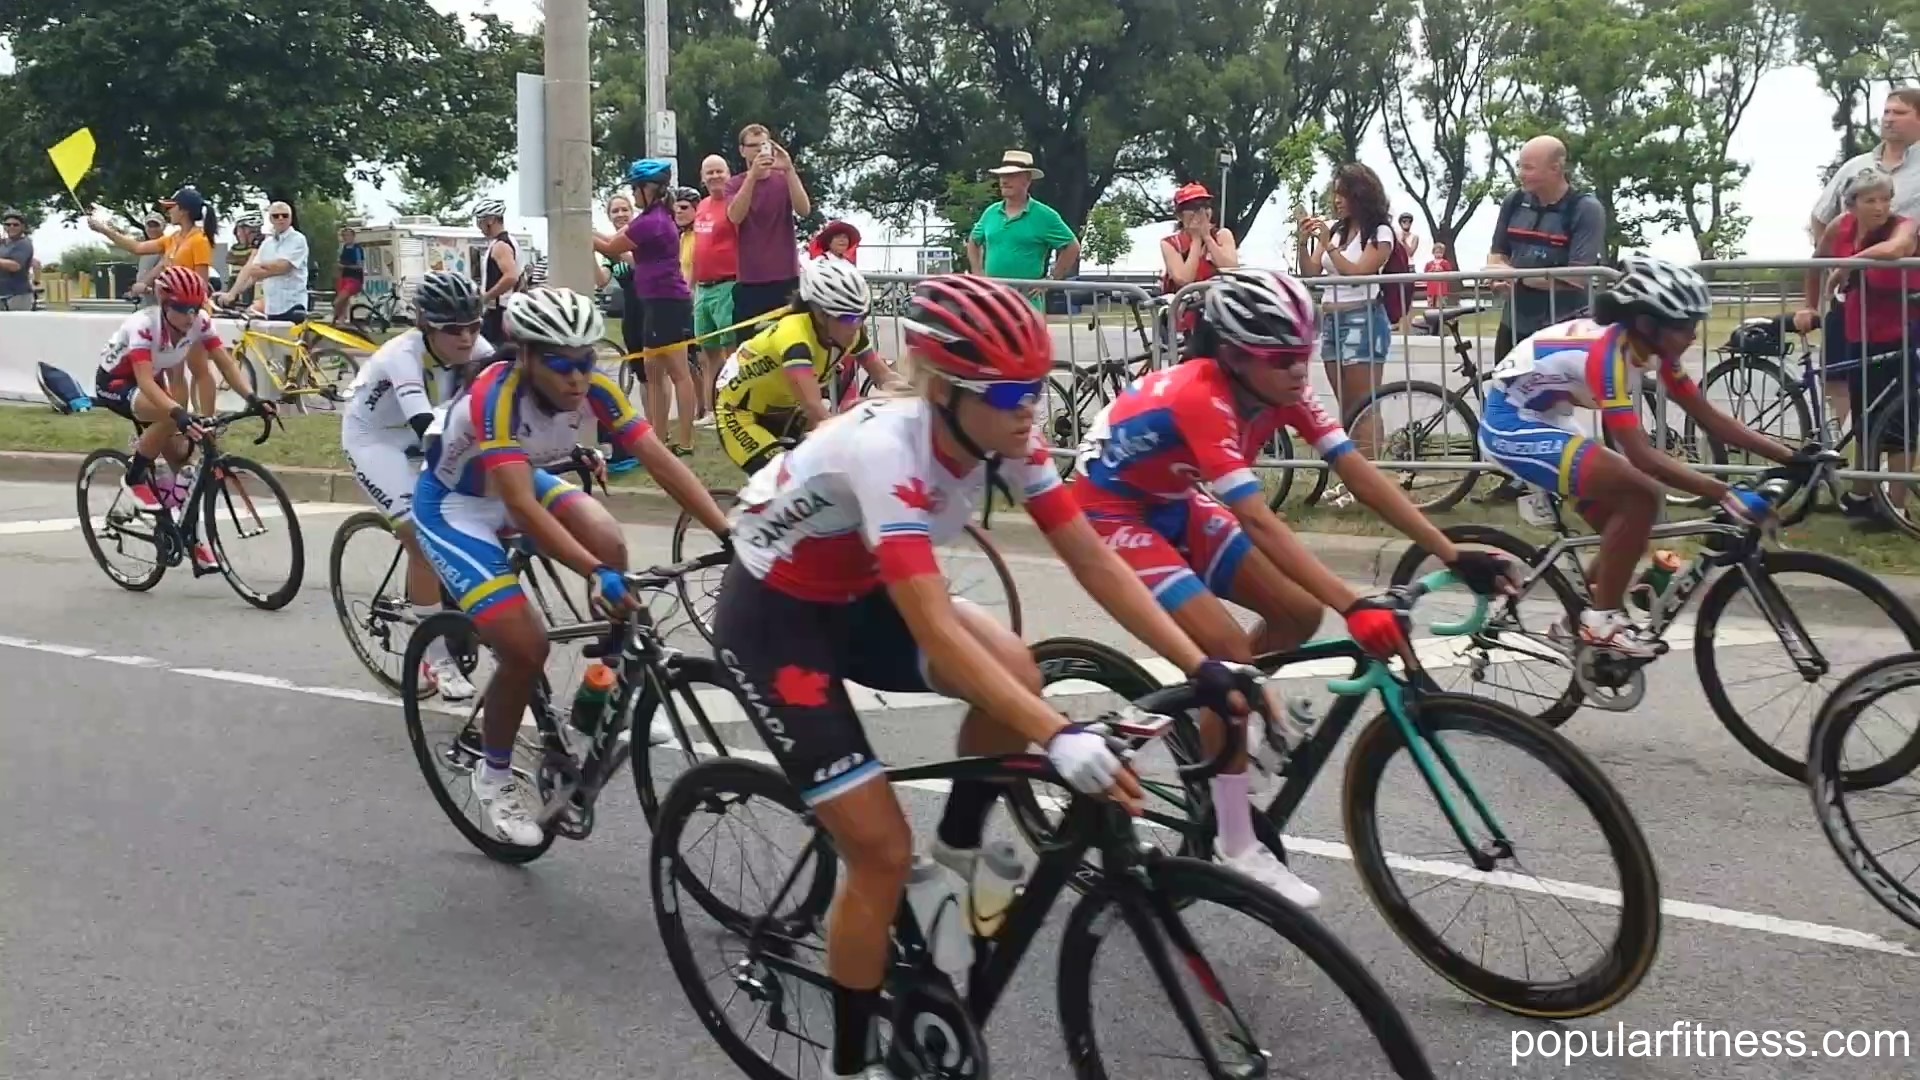 Women's bike race, women cycling in Pan Am Games Toronto - photo by popular fitness